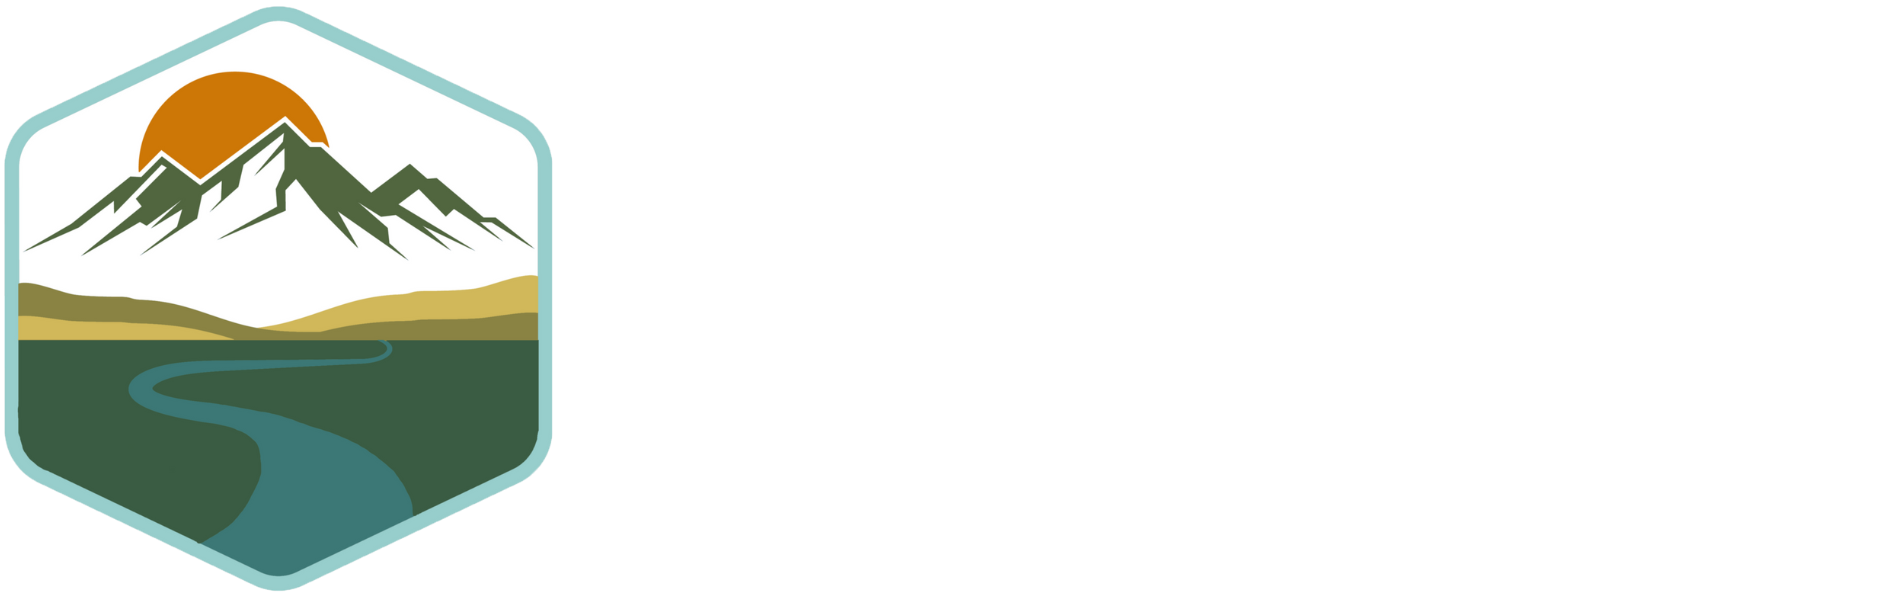 2023 Montana Outdoor Recreation Summit